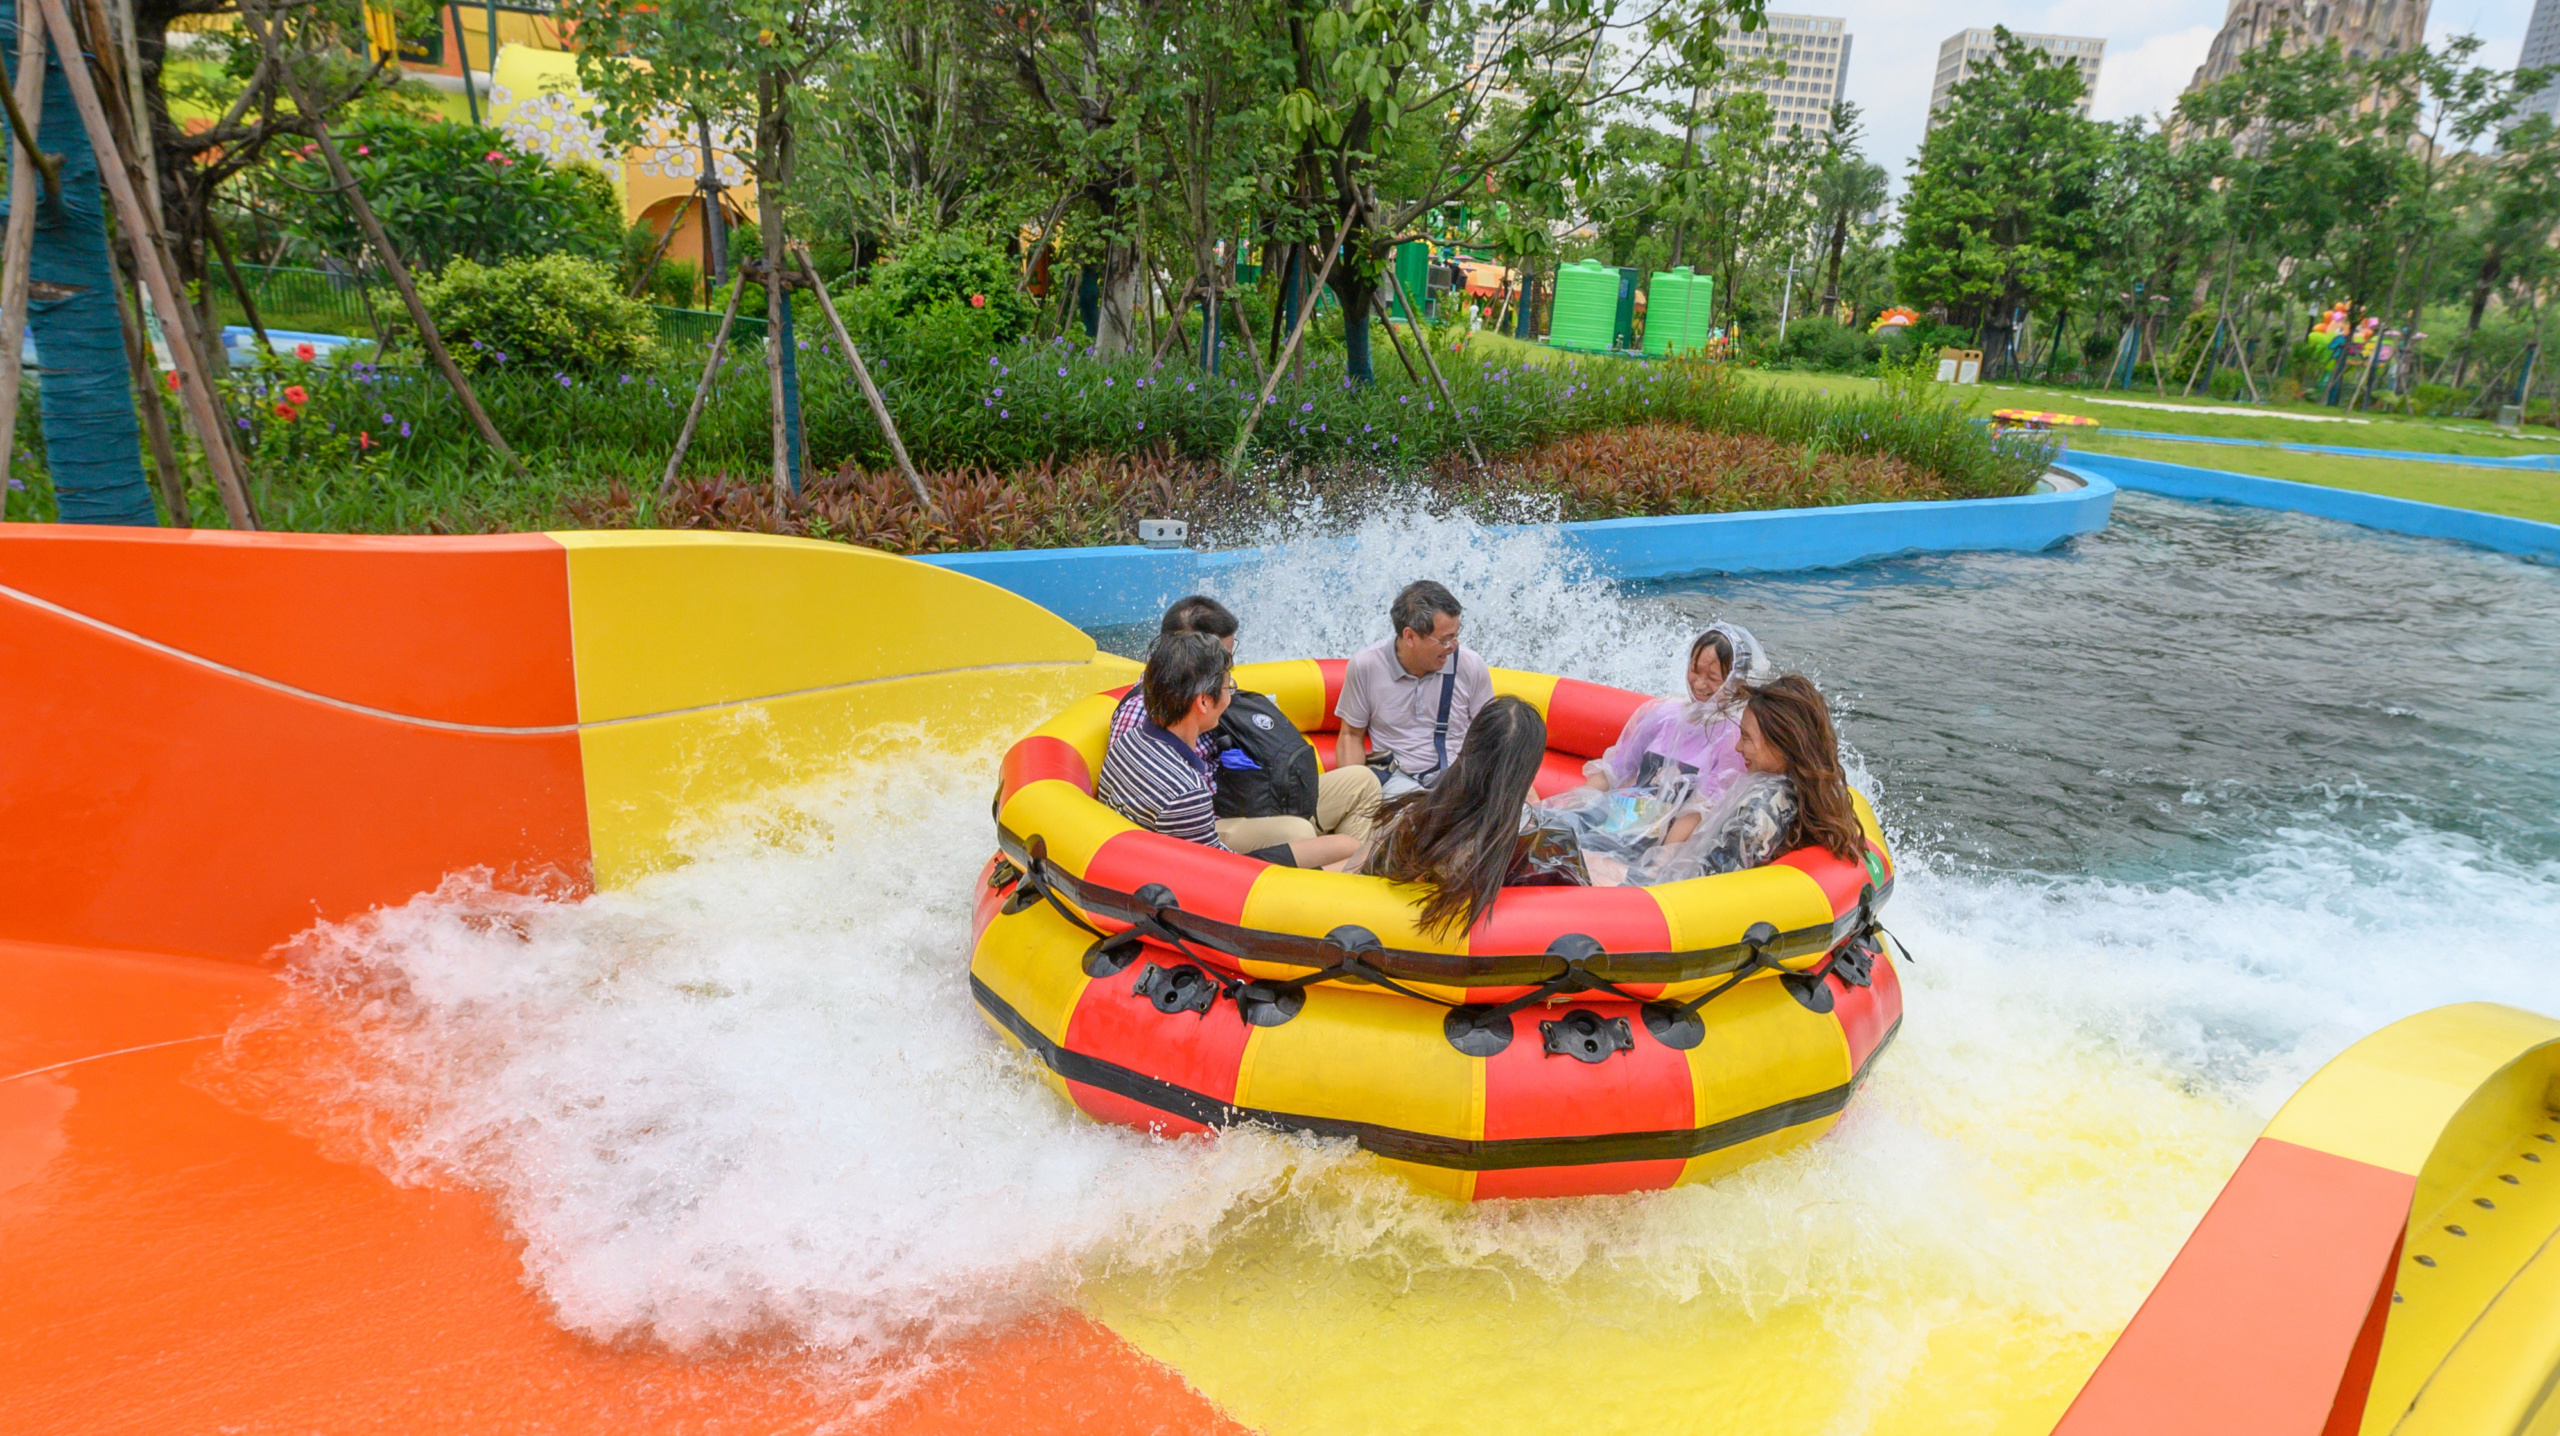 Spinning Rapids Ride, Sunac Water World & SunacLand Guangzhou, Guangzhou, China